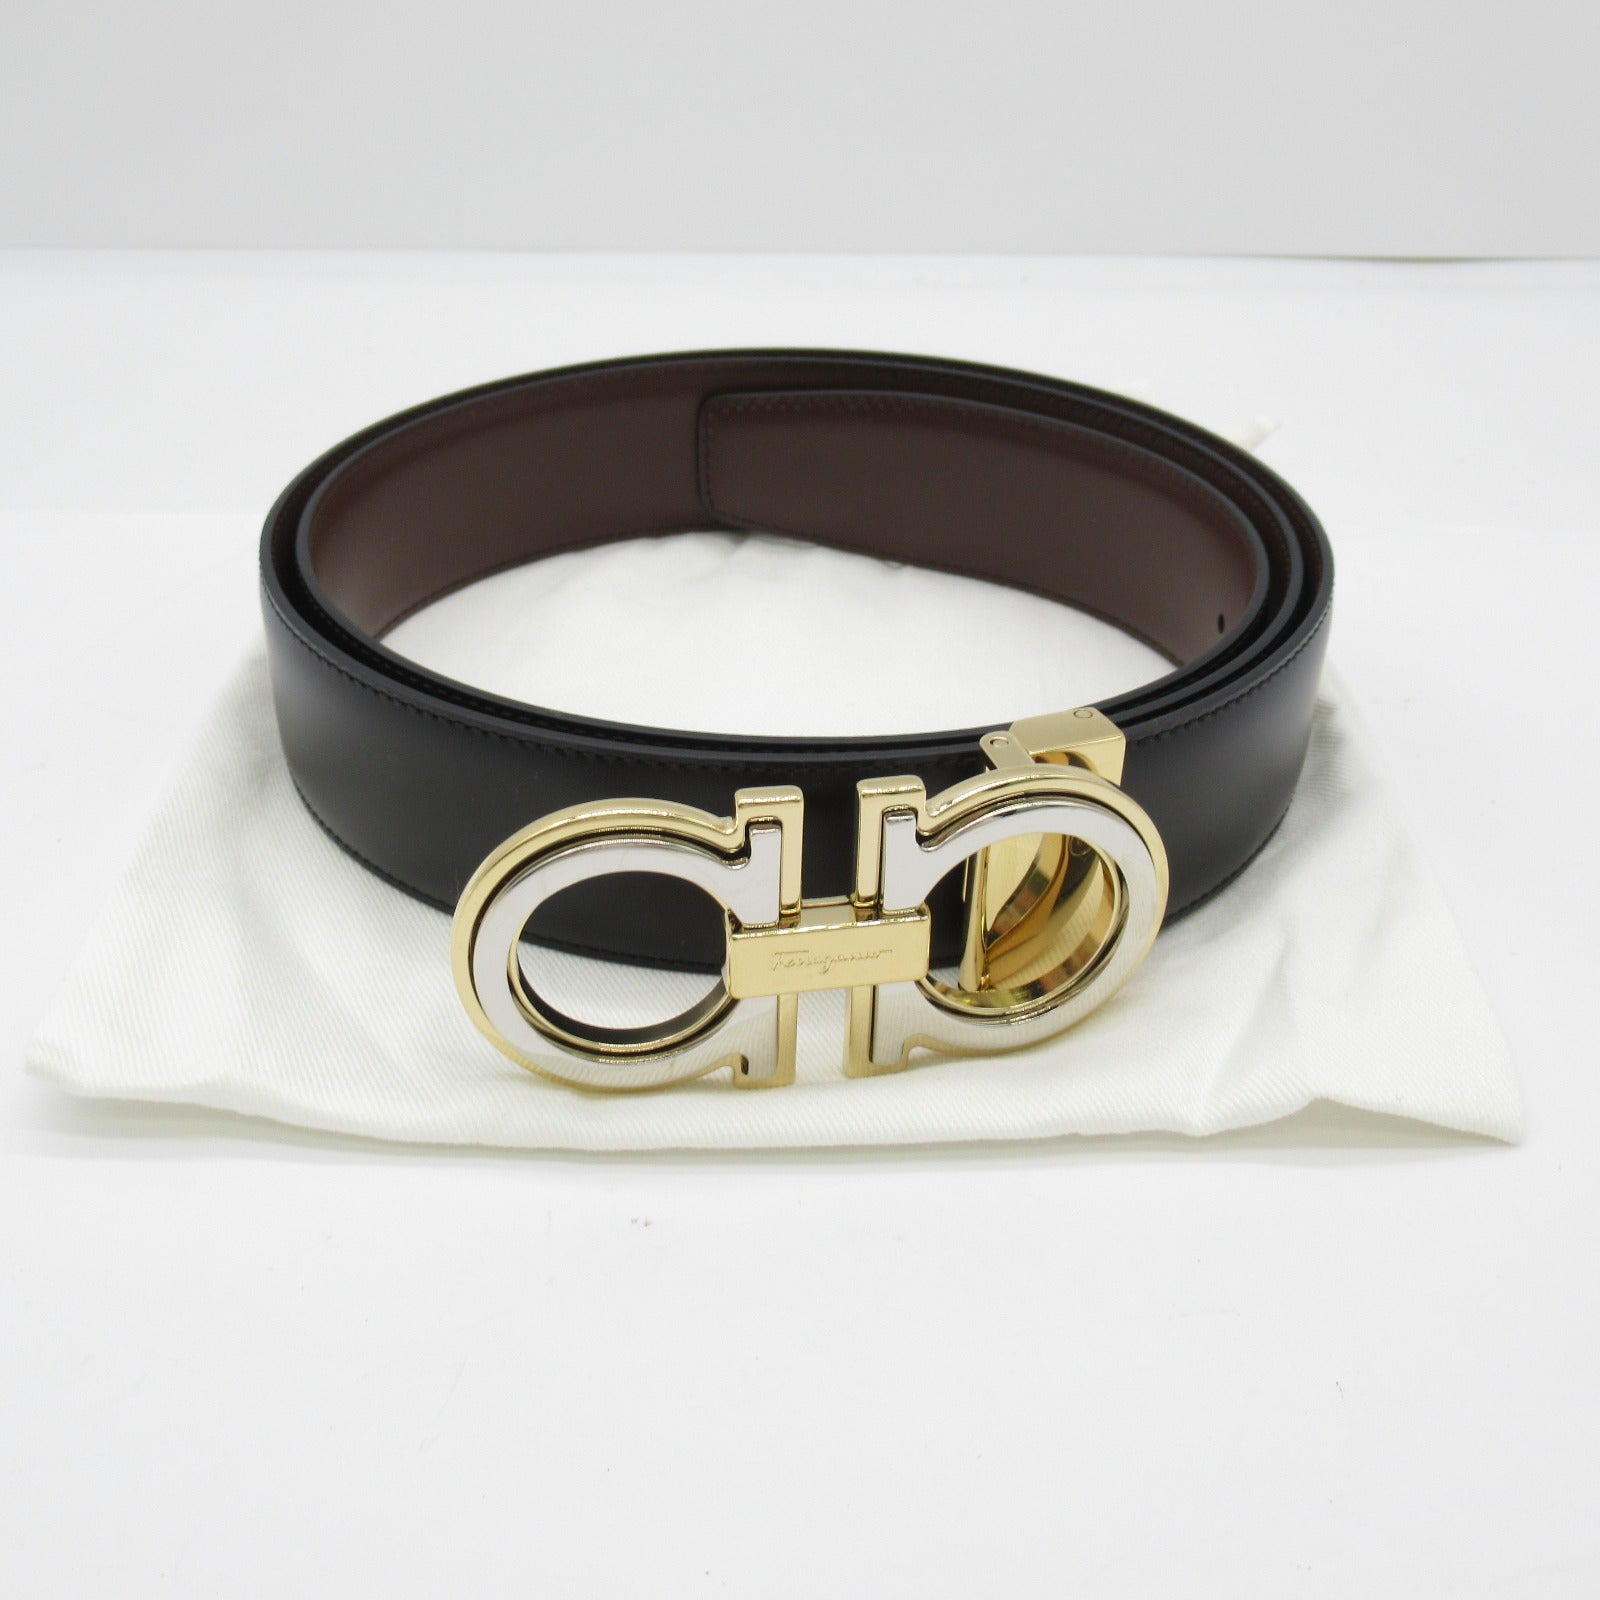 Salvatore Ferragamo Belt Belt Clothes For Mens Black/Brown 67A254764187C105